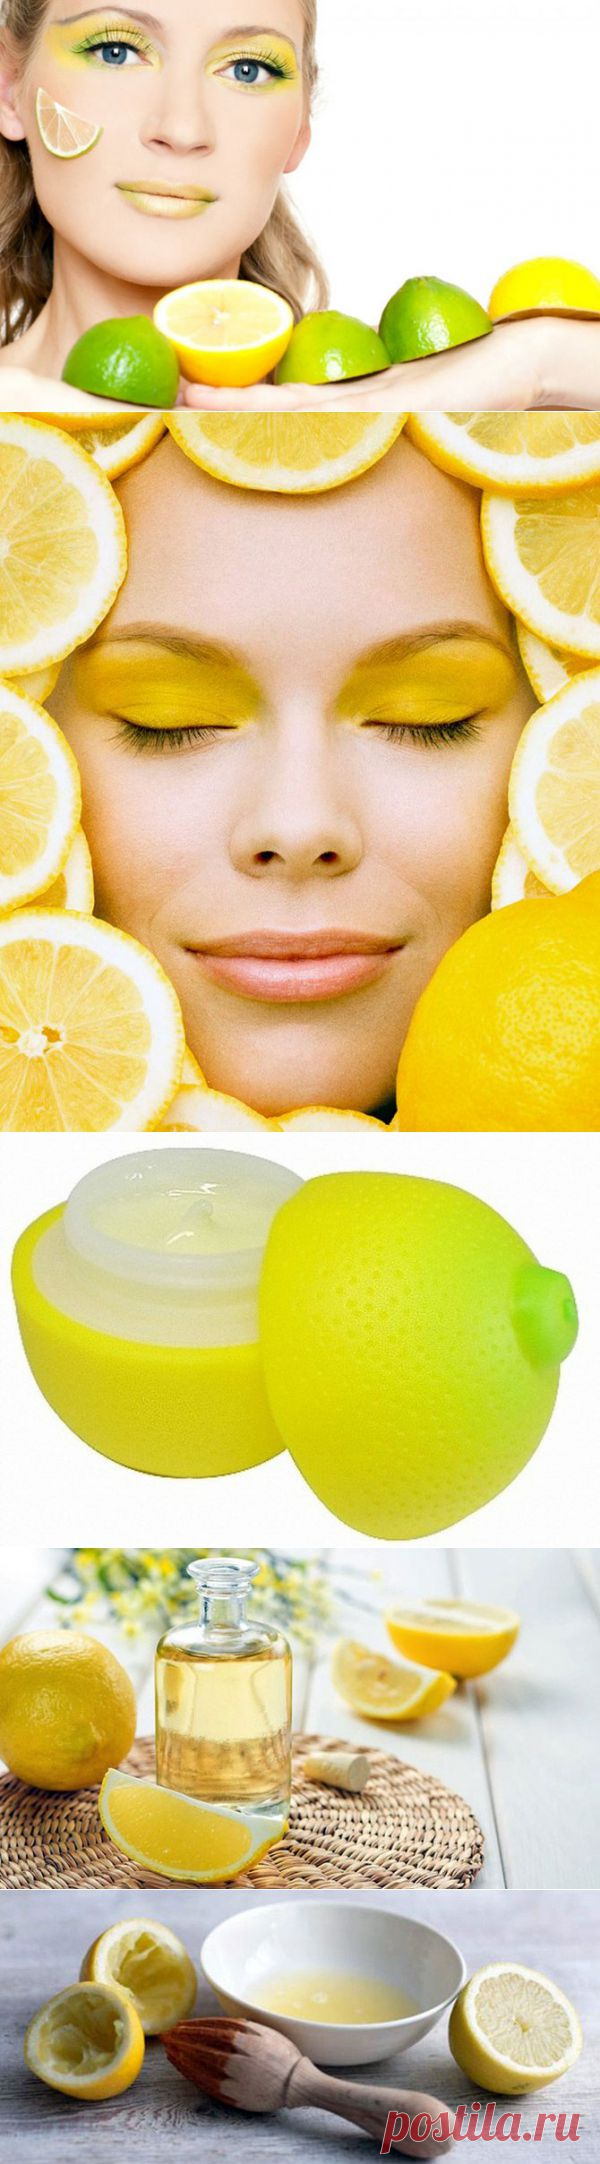 (+1) тема - Лимонная польза | Полезные советы